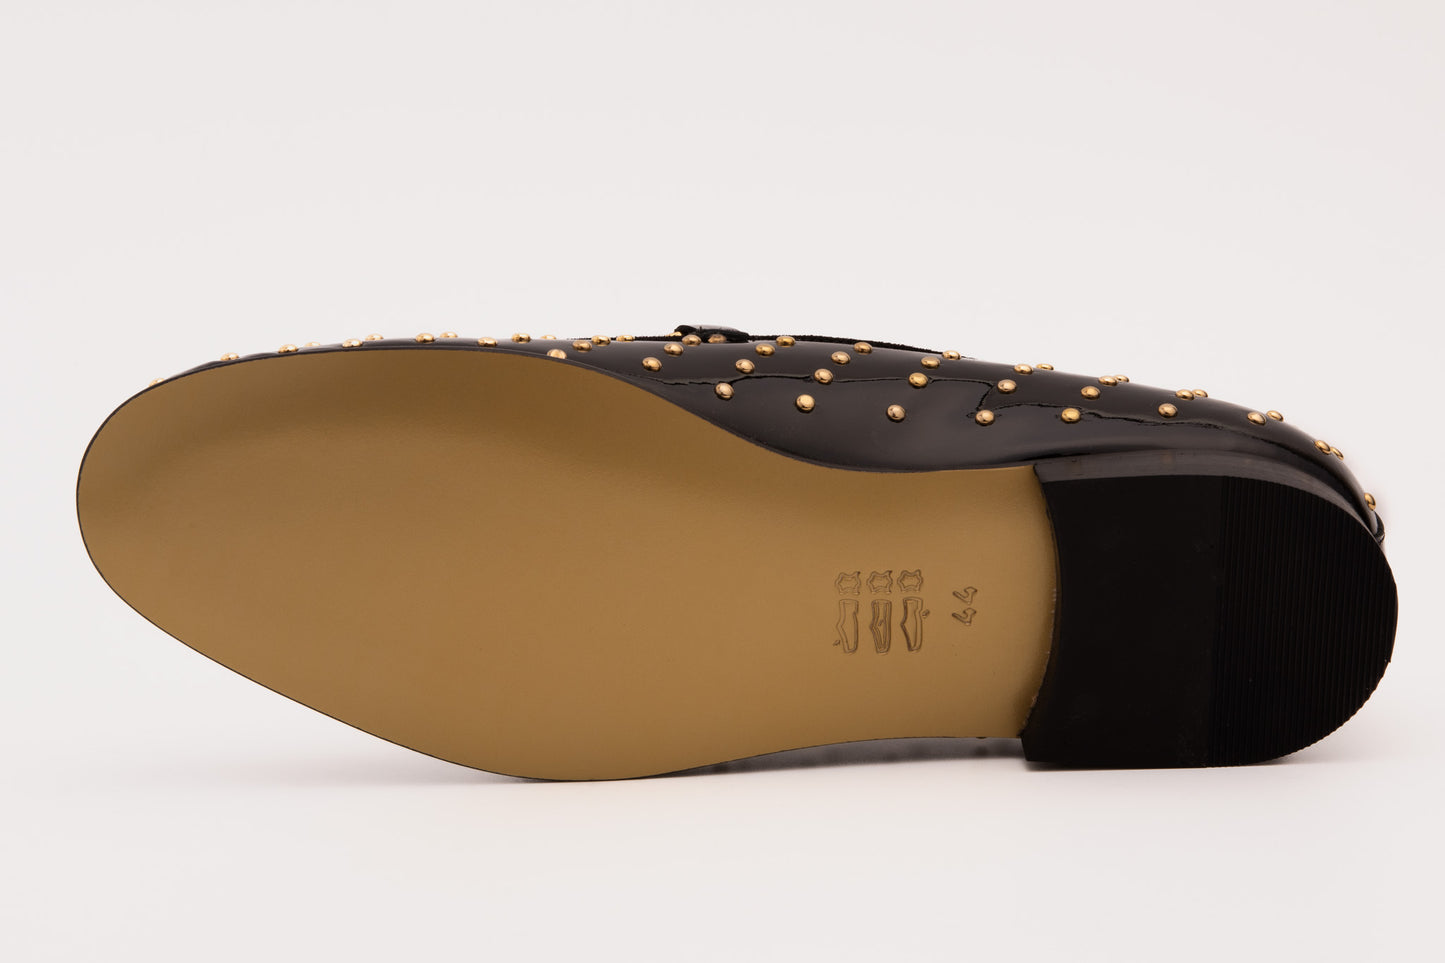 The Jupiter  Shoe Black Spike Leather  Bit Dress Loafer Limited Edition Men  Shoe